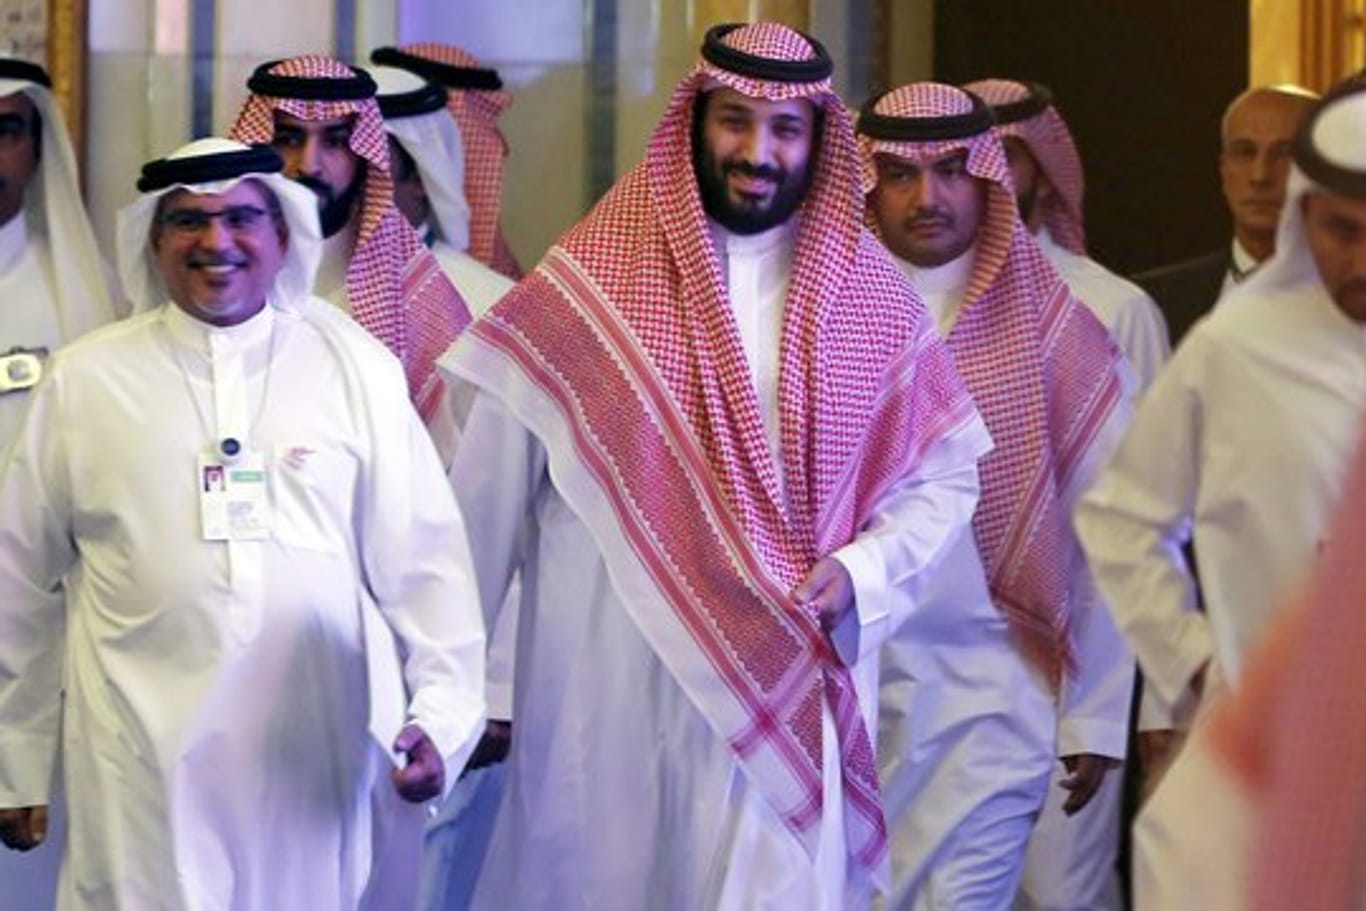 Der in der Khashoggi-Affäre unter Druck geratene saudische Kronprinz Mohammed bin Salman hat den gewaltsamen Tod des Journalisten als "abscheulichen Vorfall" bezeichnet.